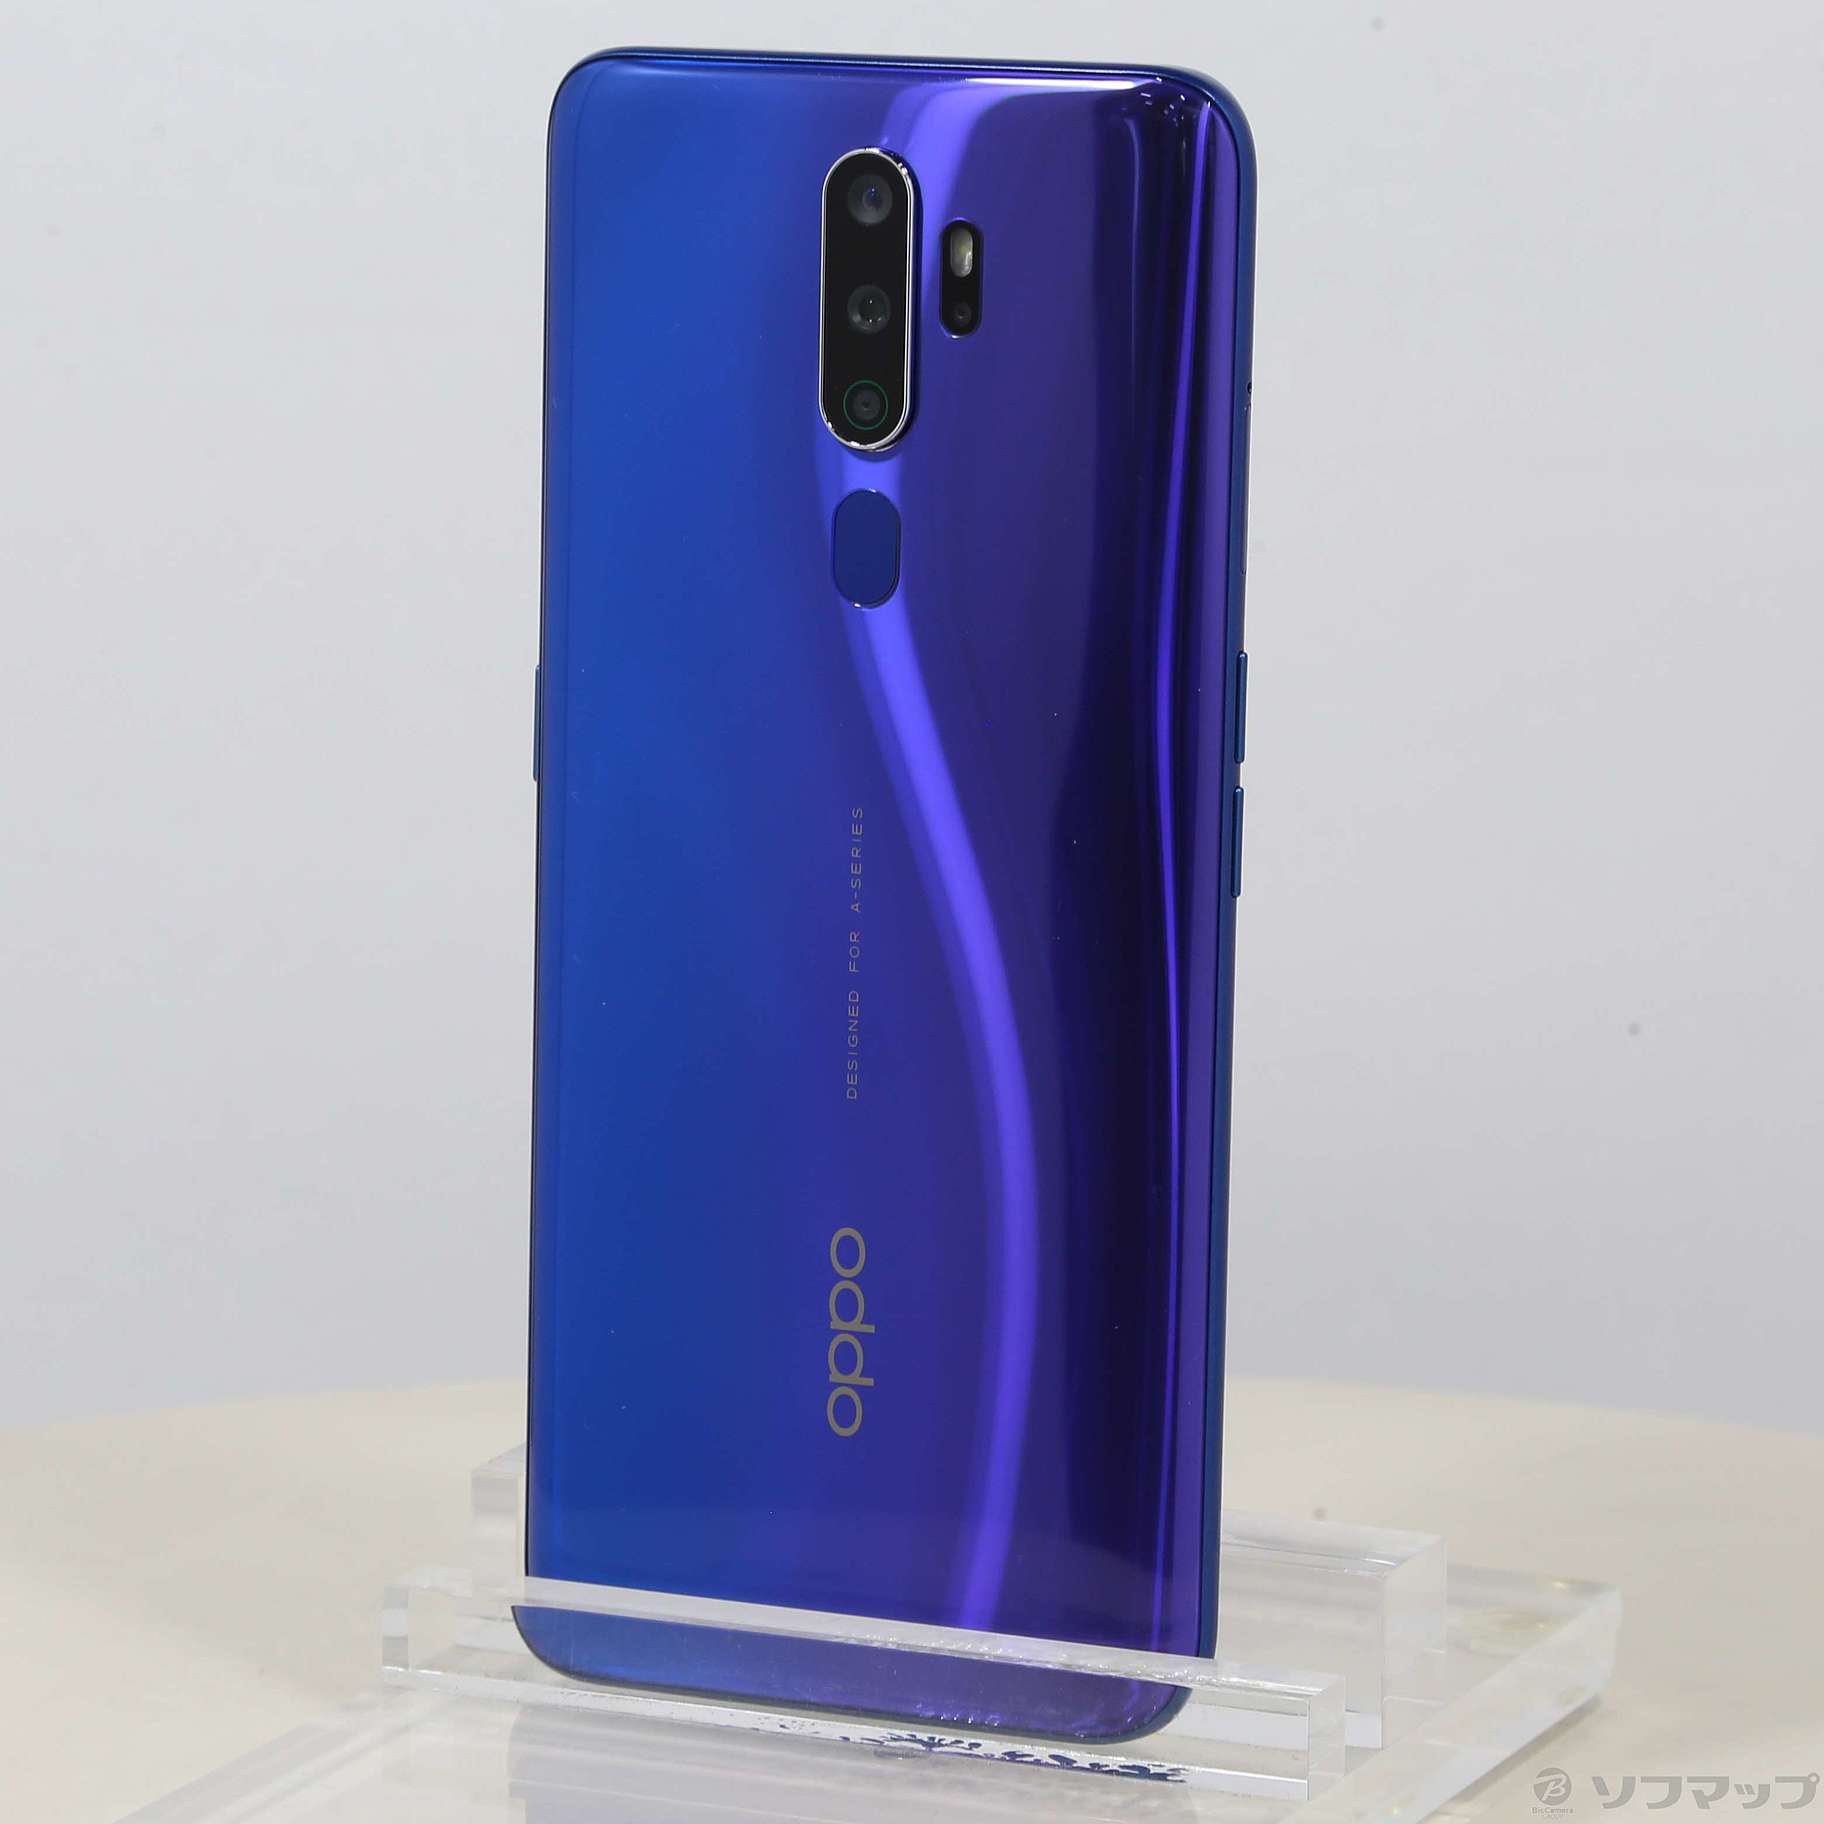 スマートフォン/携帯電話【新品未開封】OPPO A5 2020 ブルー64GB SIM